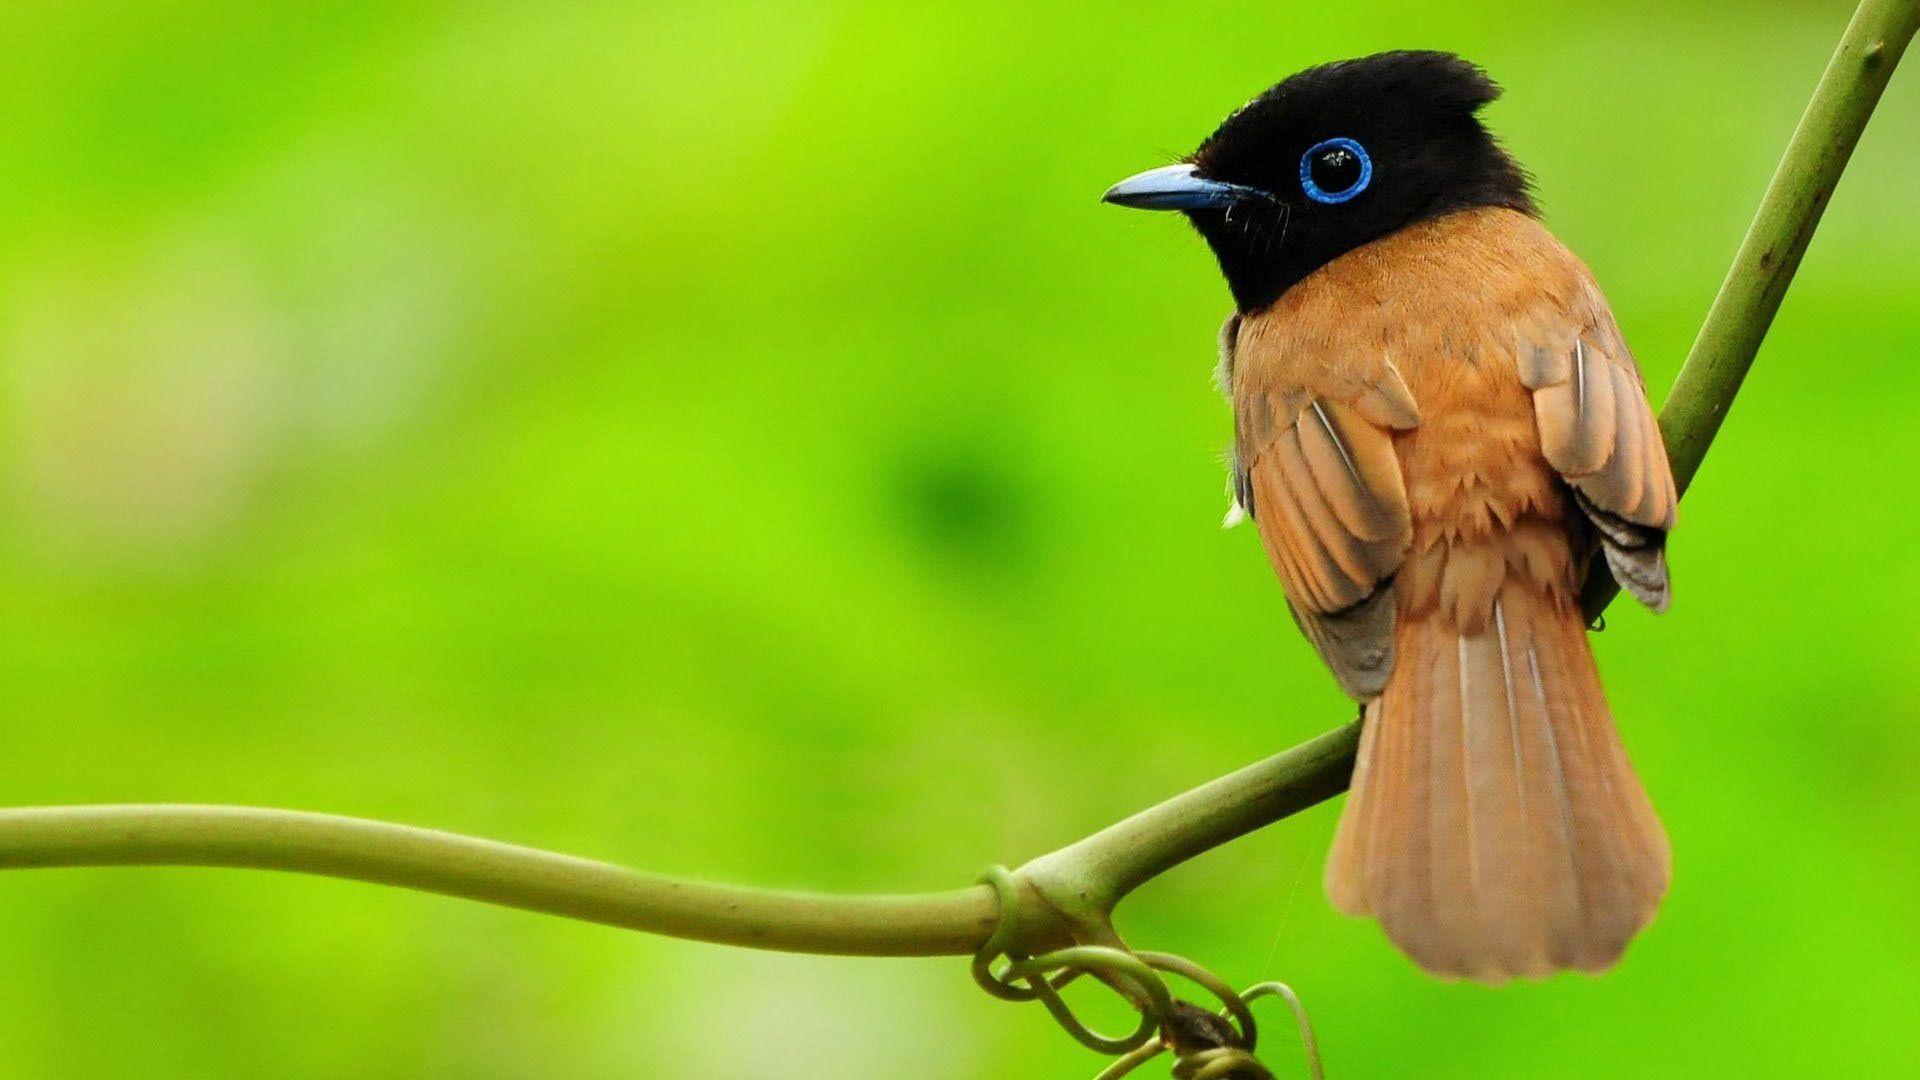 Hình nền chim dễ thương 2024: Chim là một trong những đề tài được yêu thích trong khoảng thời gian gần đây. Với hình nền chim dễ thương 2024, bạn sẽ được thưởng thức những bức ảnh đáng yêu về chim cùng những cảnh quan tuyệt đẹp. Hình nền chim dễ thương 2024 sẽ mang đến cho bạn cảm giác thư thái và đầy màu sắc.